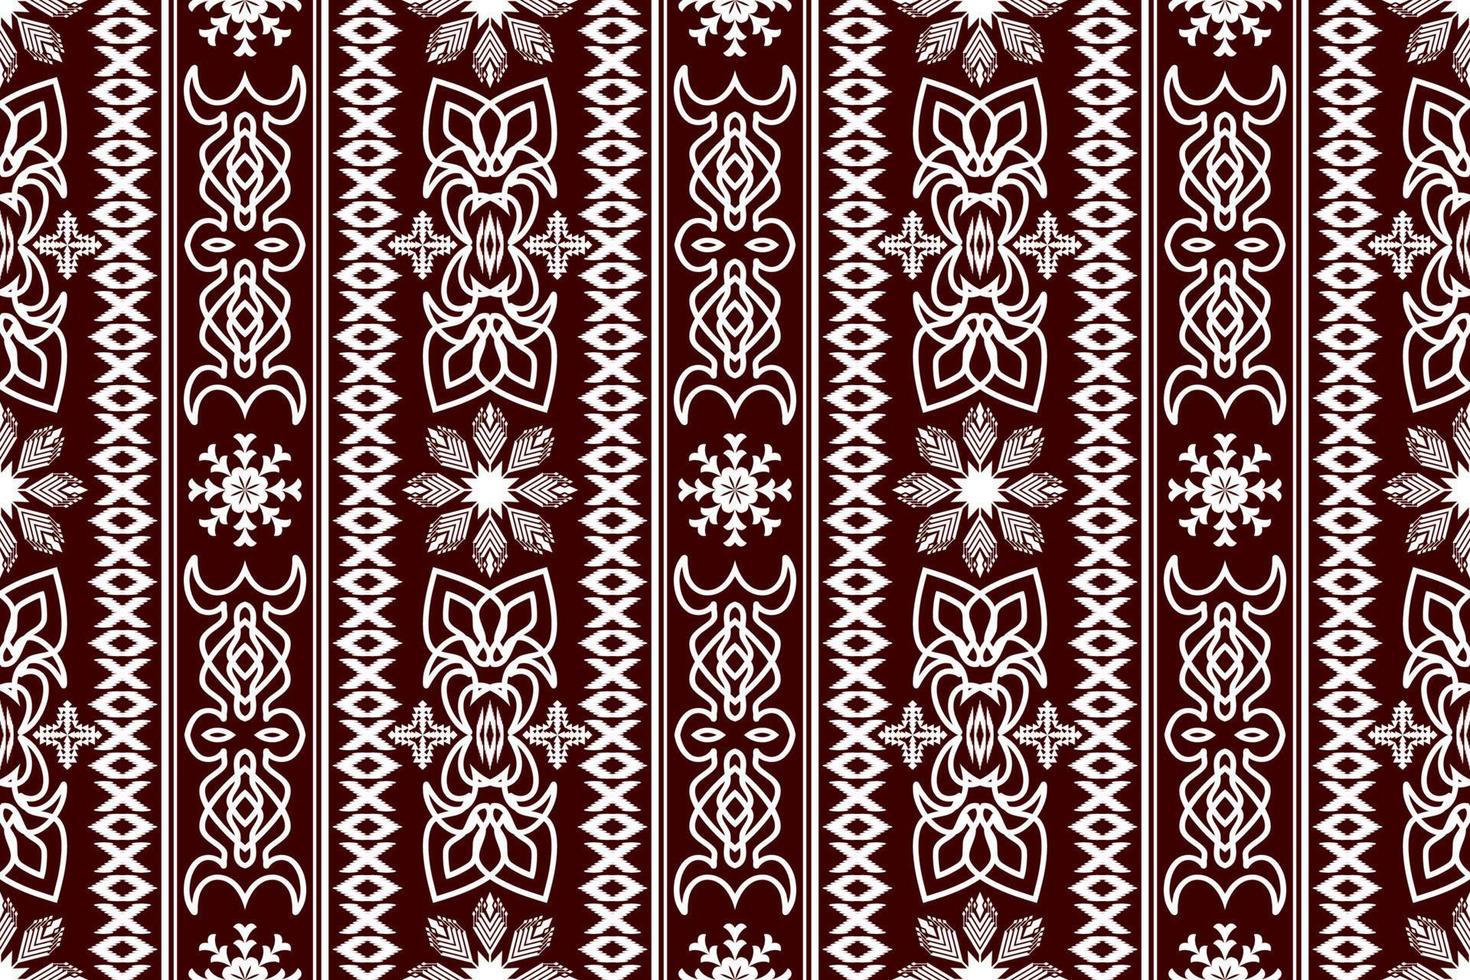 geometrisk etnisk orientalisk traditionell konst mönster.figur stam- broderi stil.design för etnisk bakgrund, tapeter, kläder, inslagning, tyg, element, sarong, vektor illustration